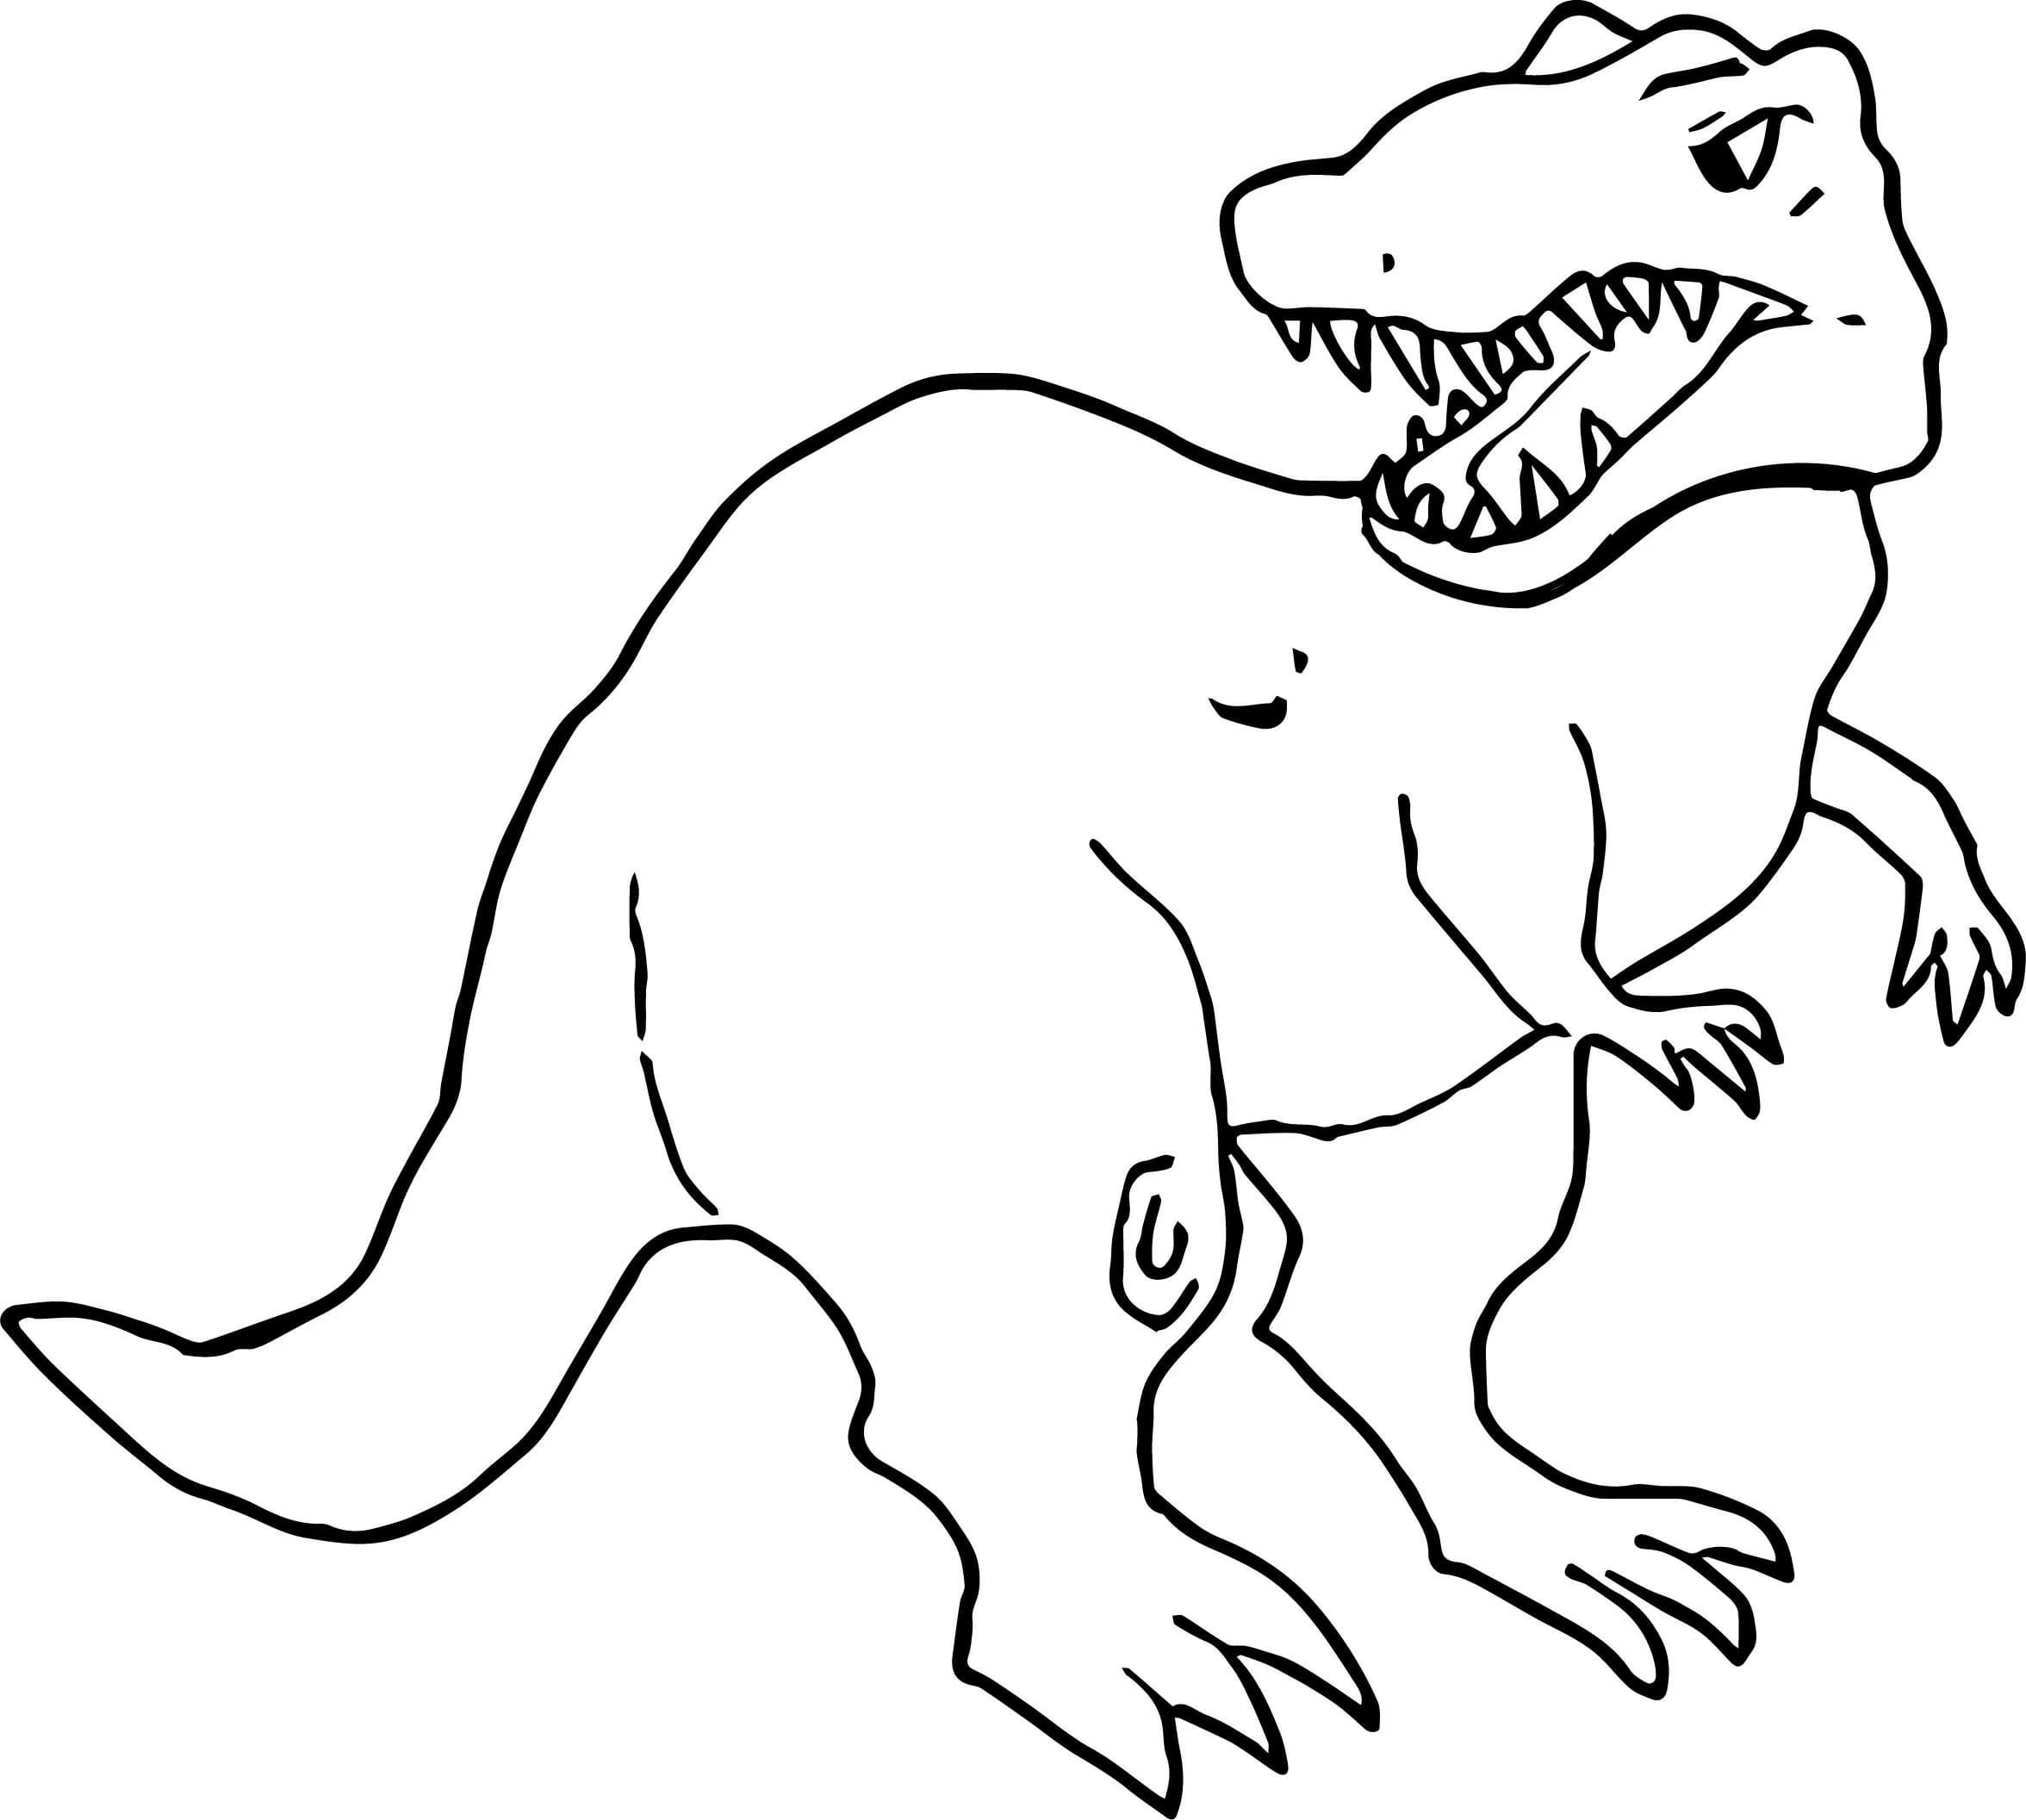 Ausmalbild T-rex Ein alter Bewohner unseres Planeten